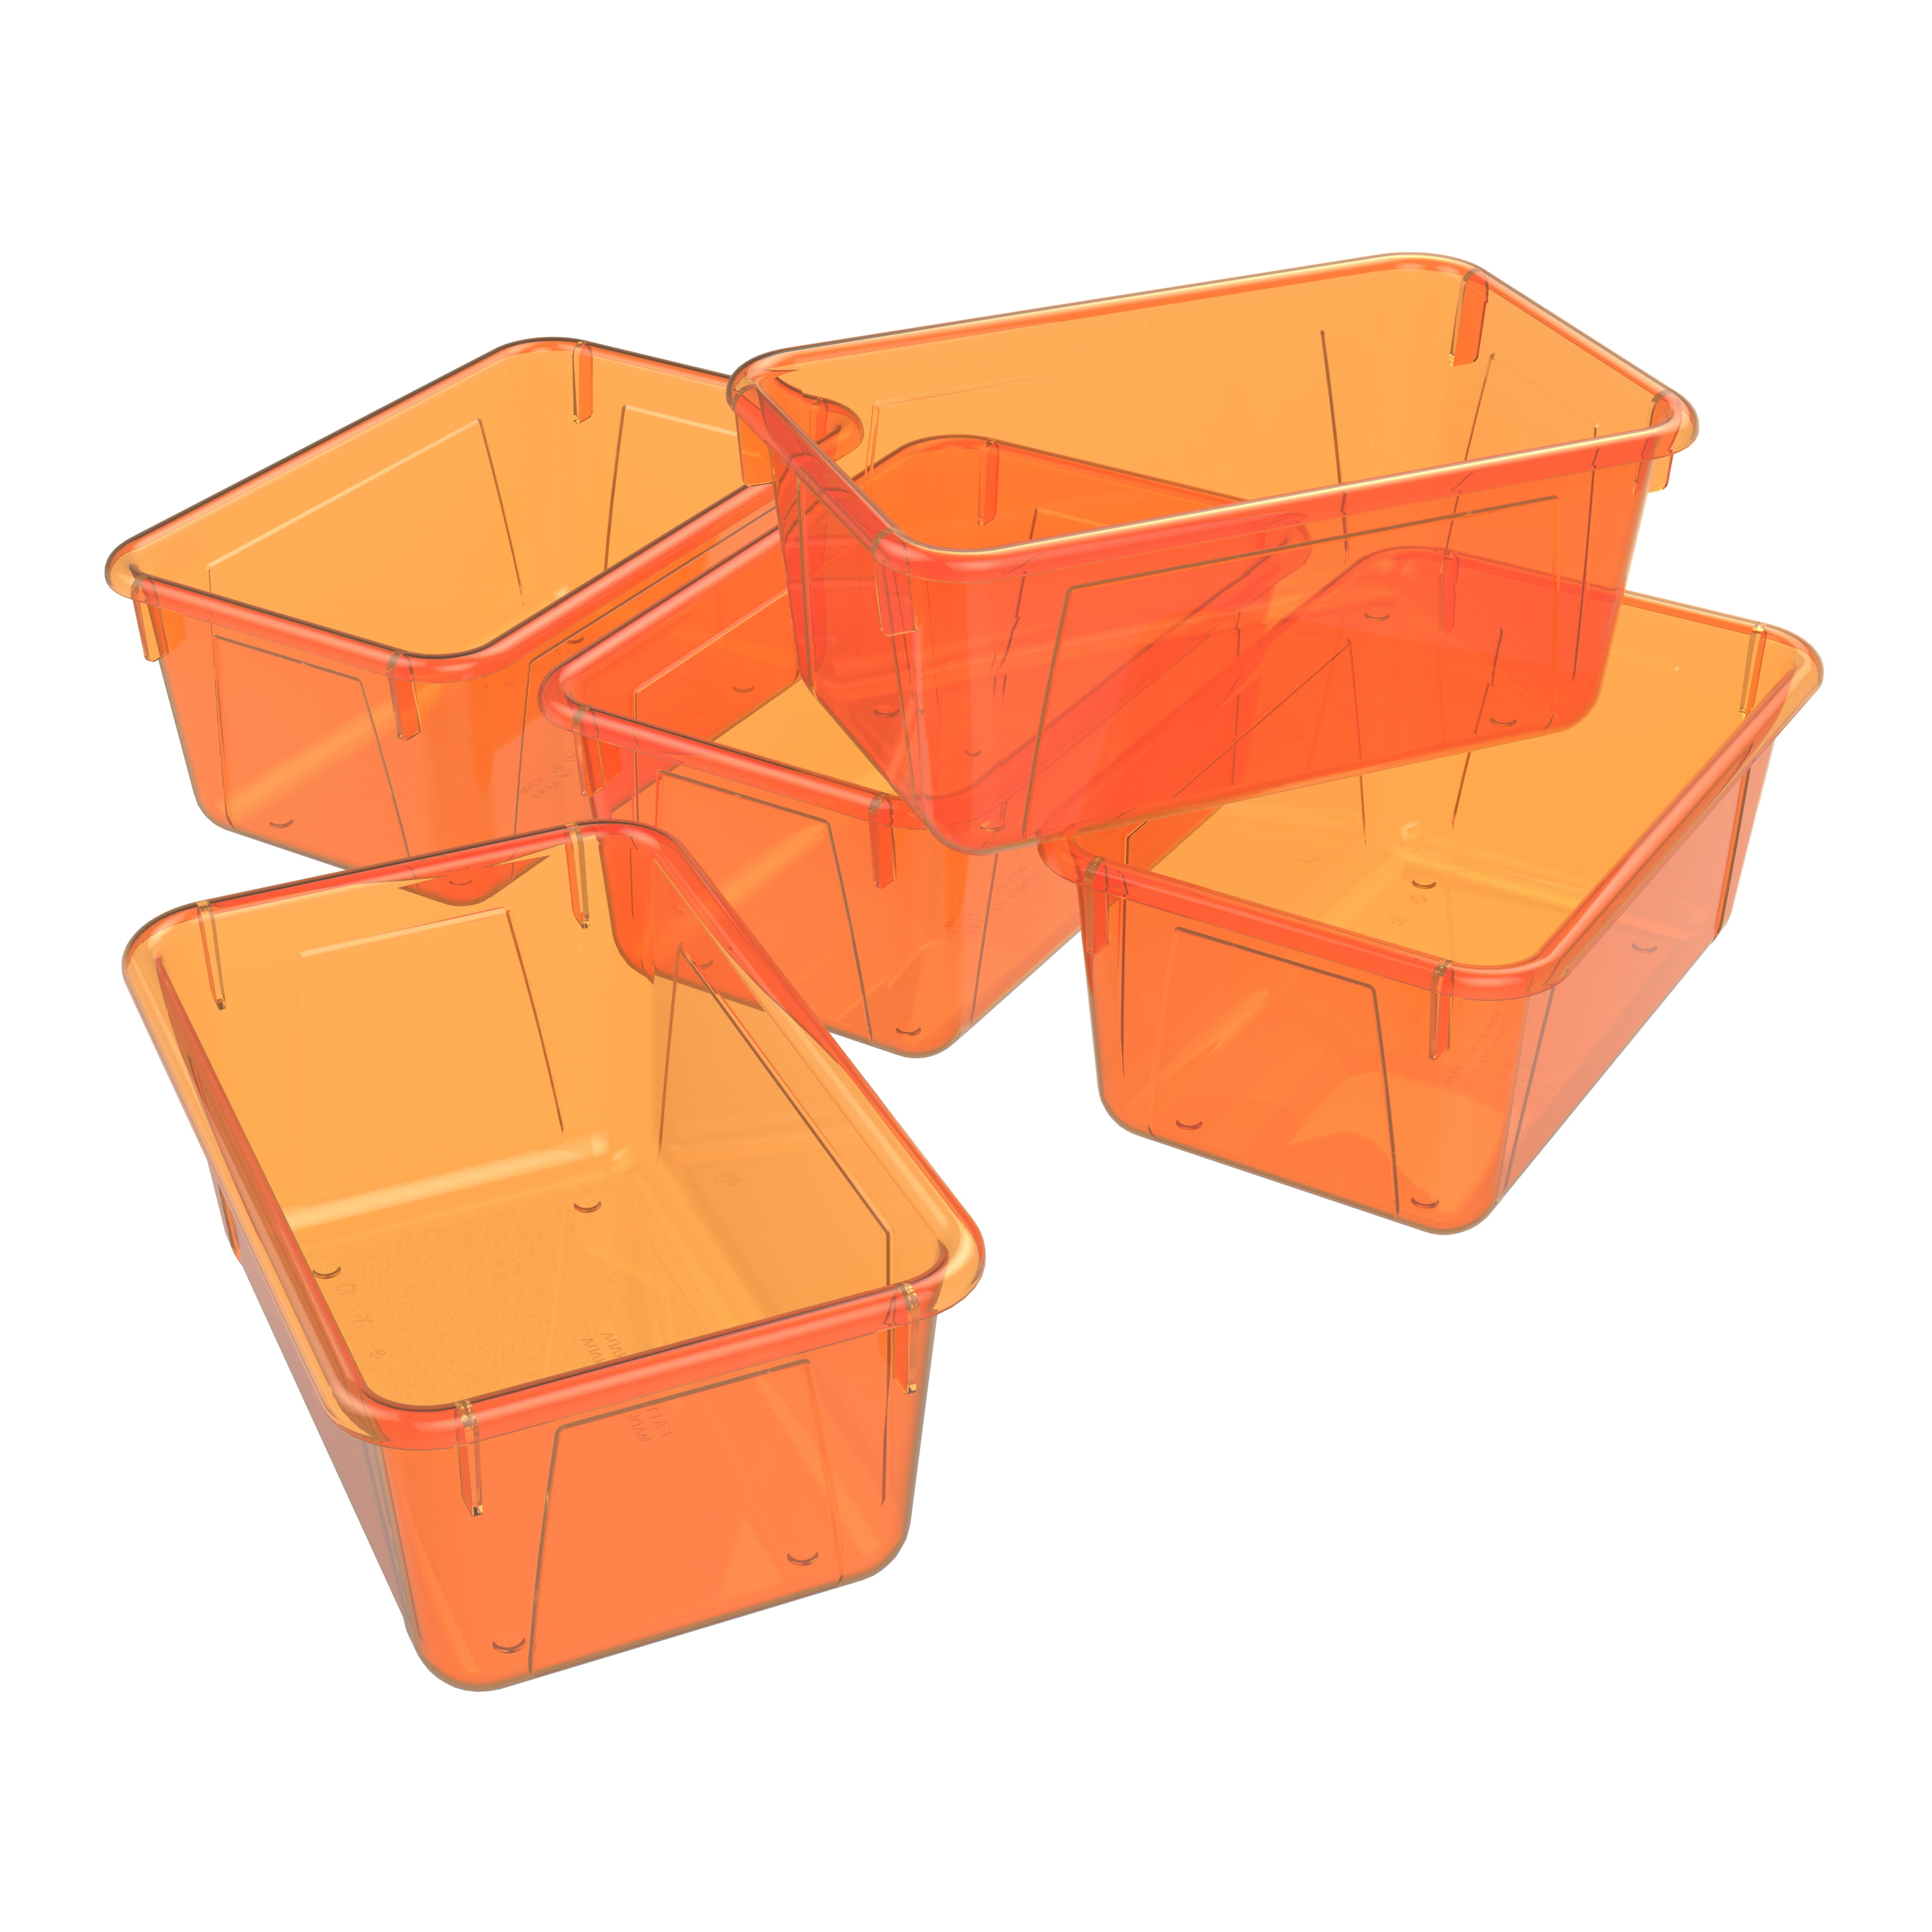 Dishwasher-Safe Plastic Baskets - Set of 2 at Lakeshore Learning